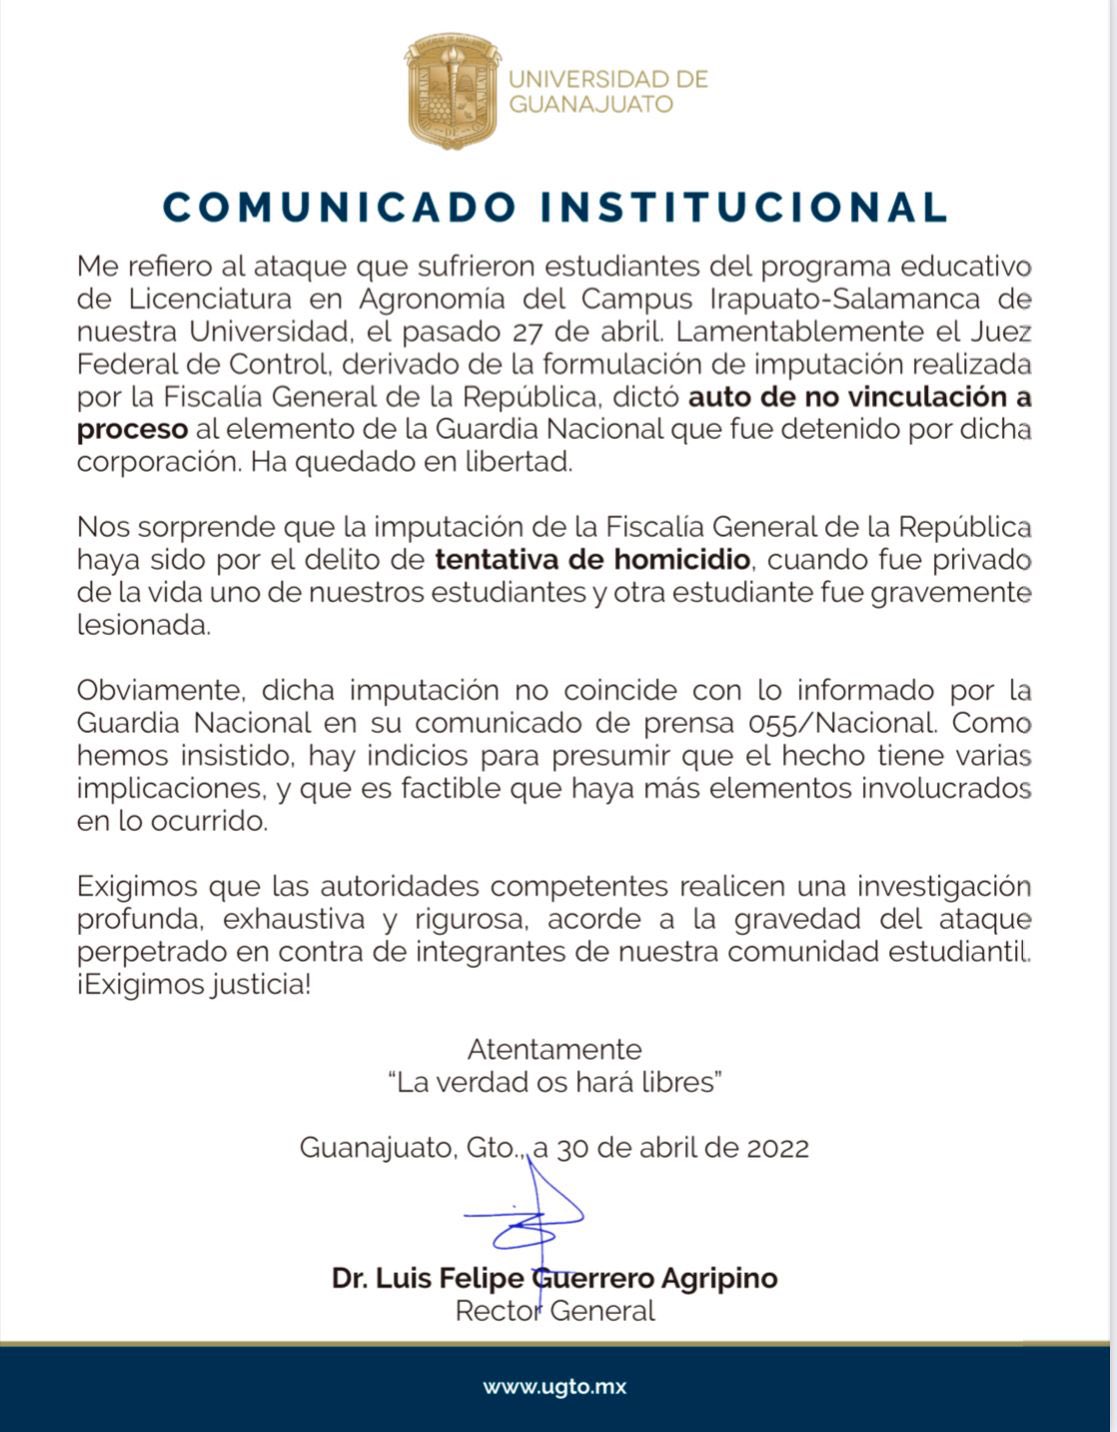 La universidad mostró su descontento (Foto: Universidad de Guanajuato)